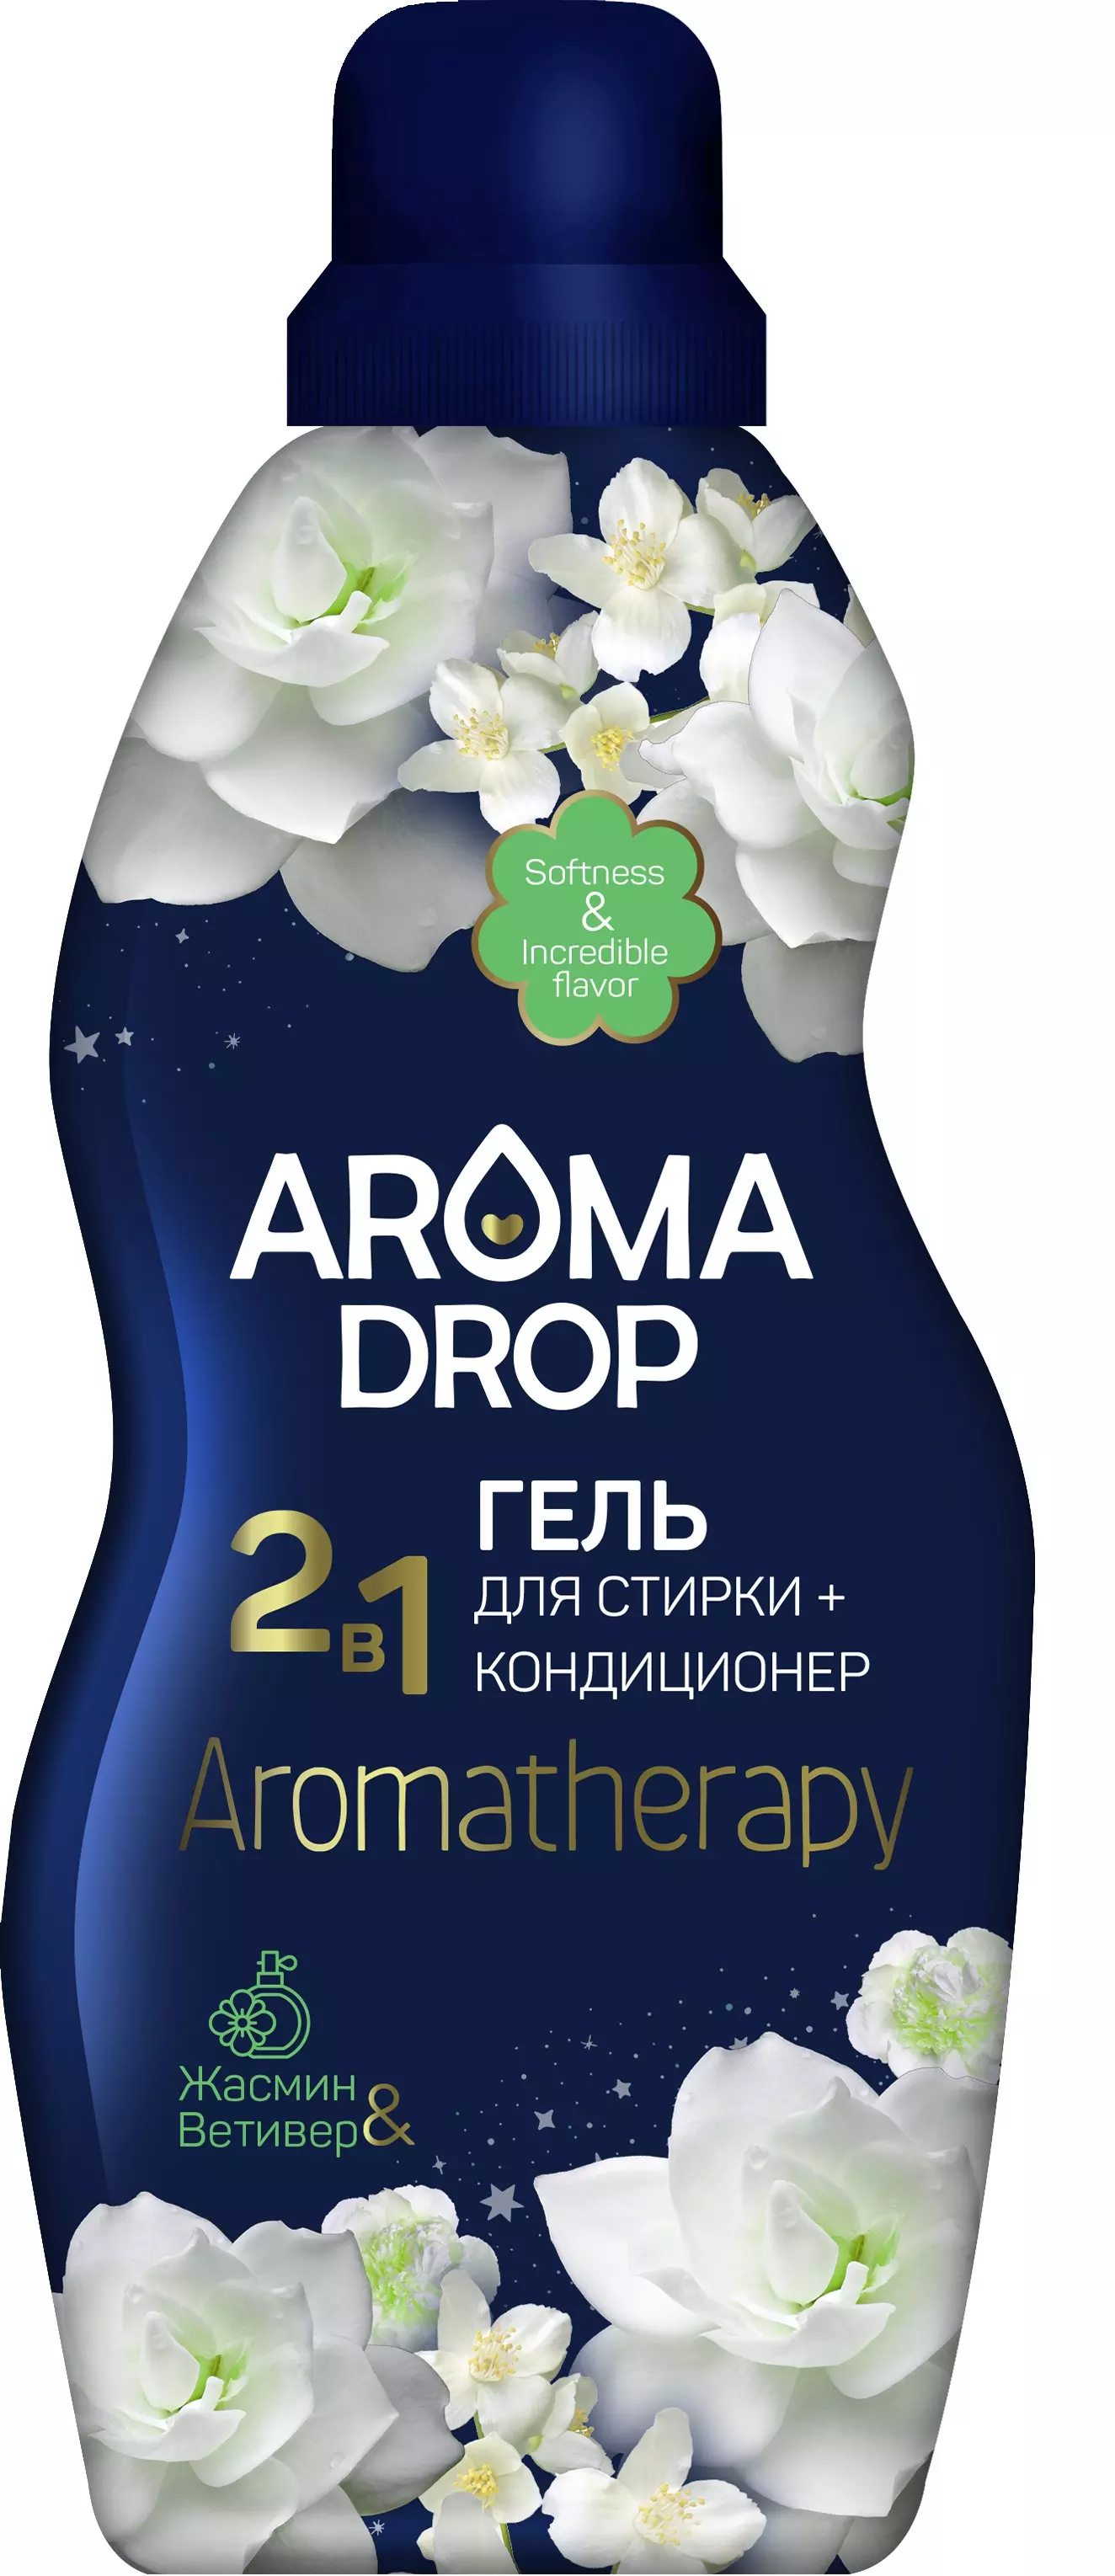 Гель для стирки Aroma Drop Aromatherapy 2 в 1 Жасмин и Ветивер, 1 л